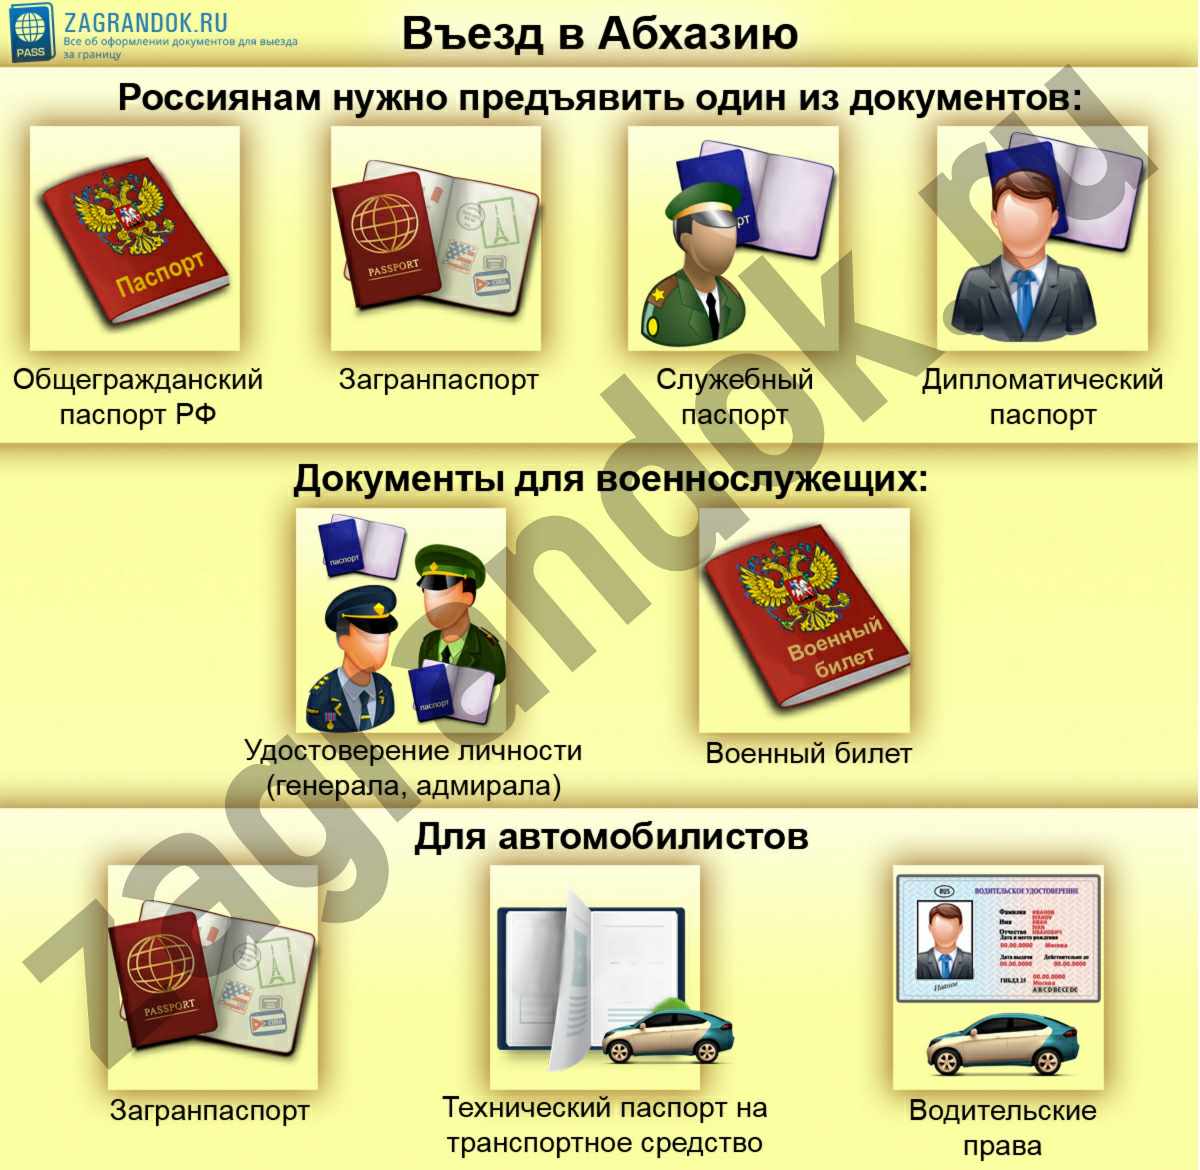 Поездка в абхазию в 2021 году: нужна ли виза, загранпаспорт, граница